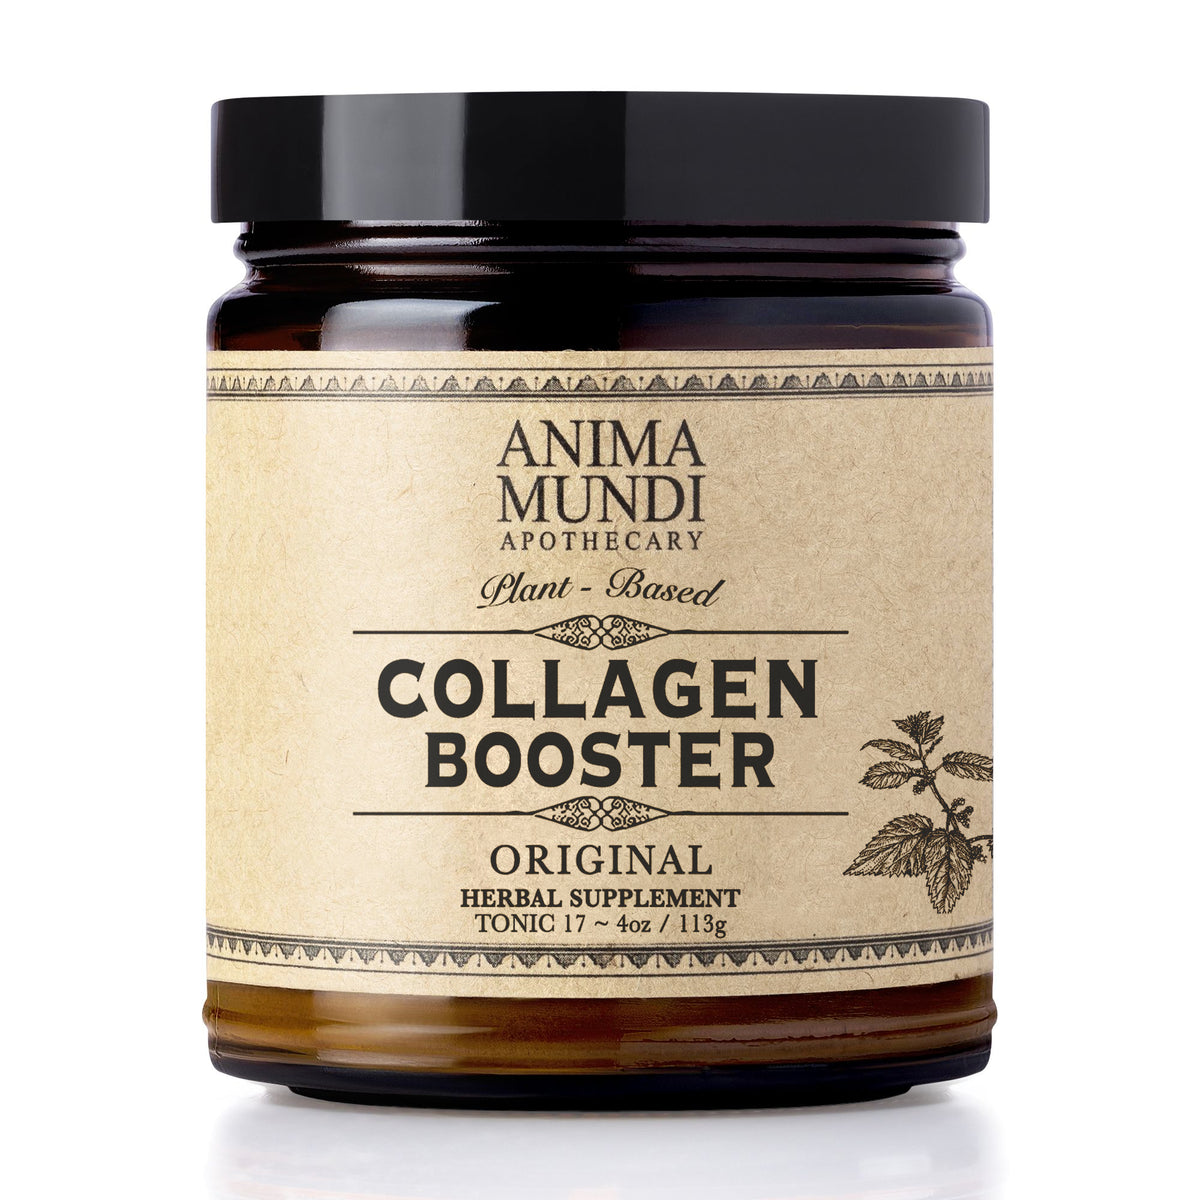 Anima Mundi Herbals - Collagen Booster Original POWDER (4oz)